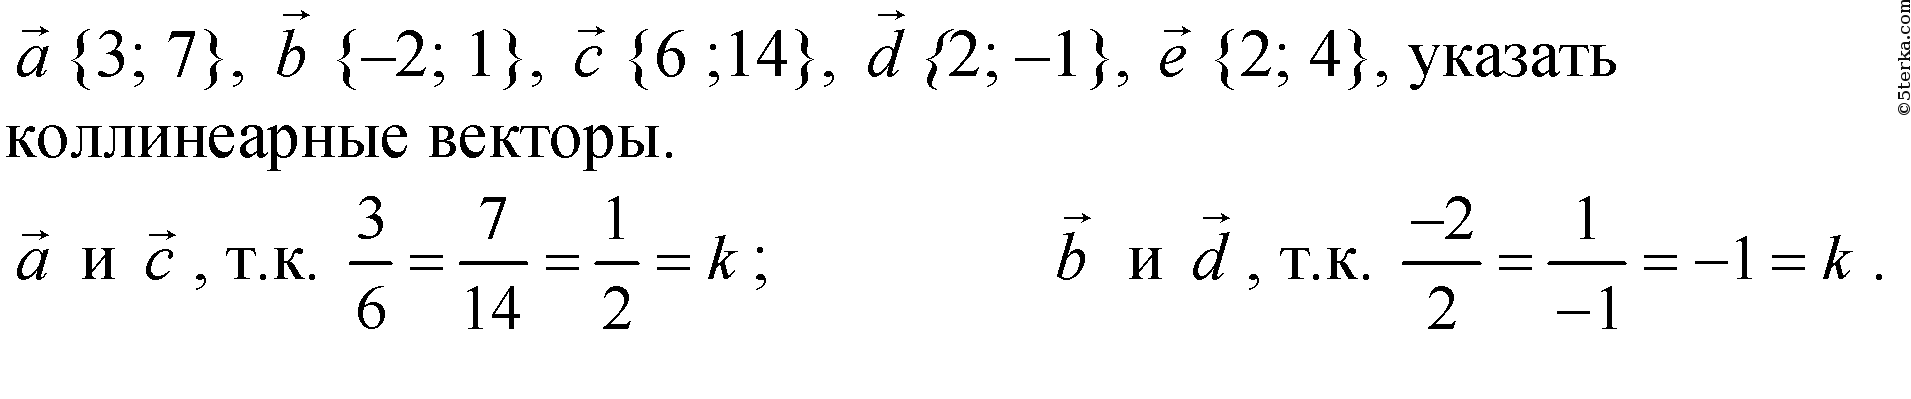 Даны вектора 3 5 4. Укажите пару коллинеарных векторов. 1+1=2 Вектор. 1 2 3 Вектор. Вектор 1 4 3.